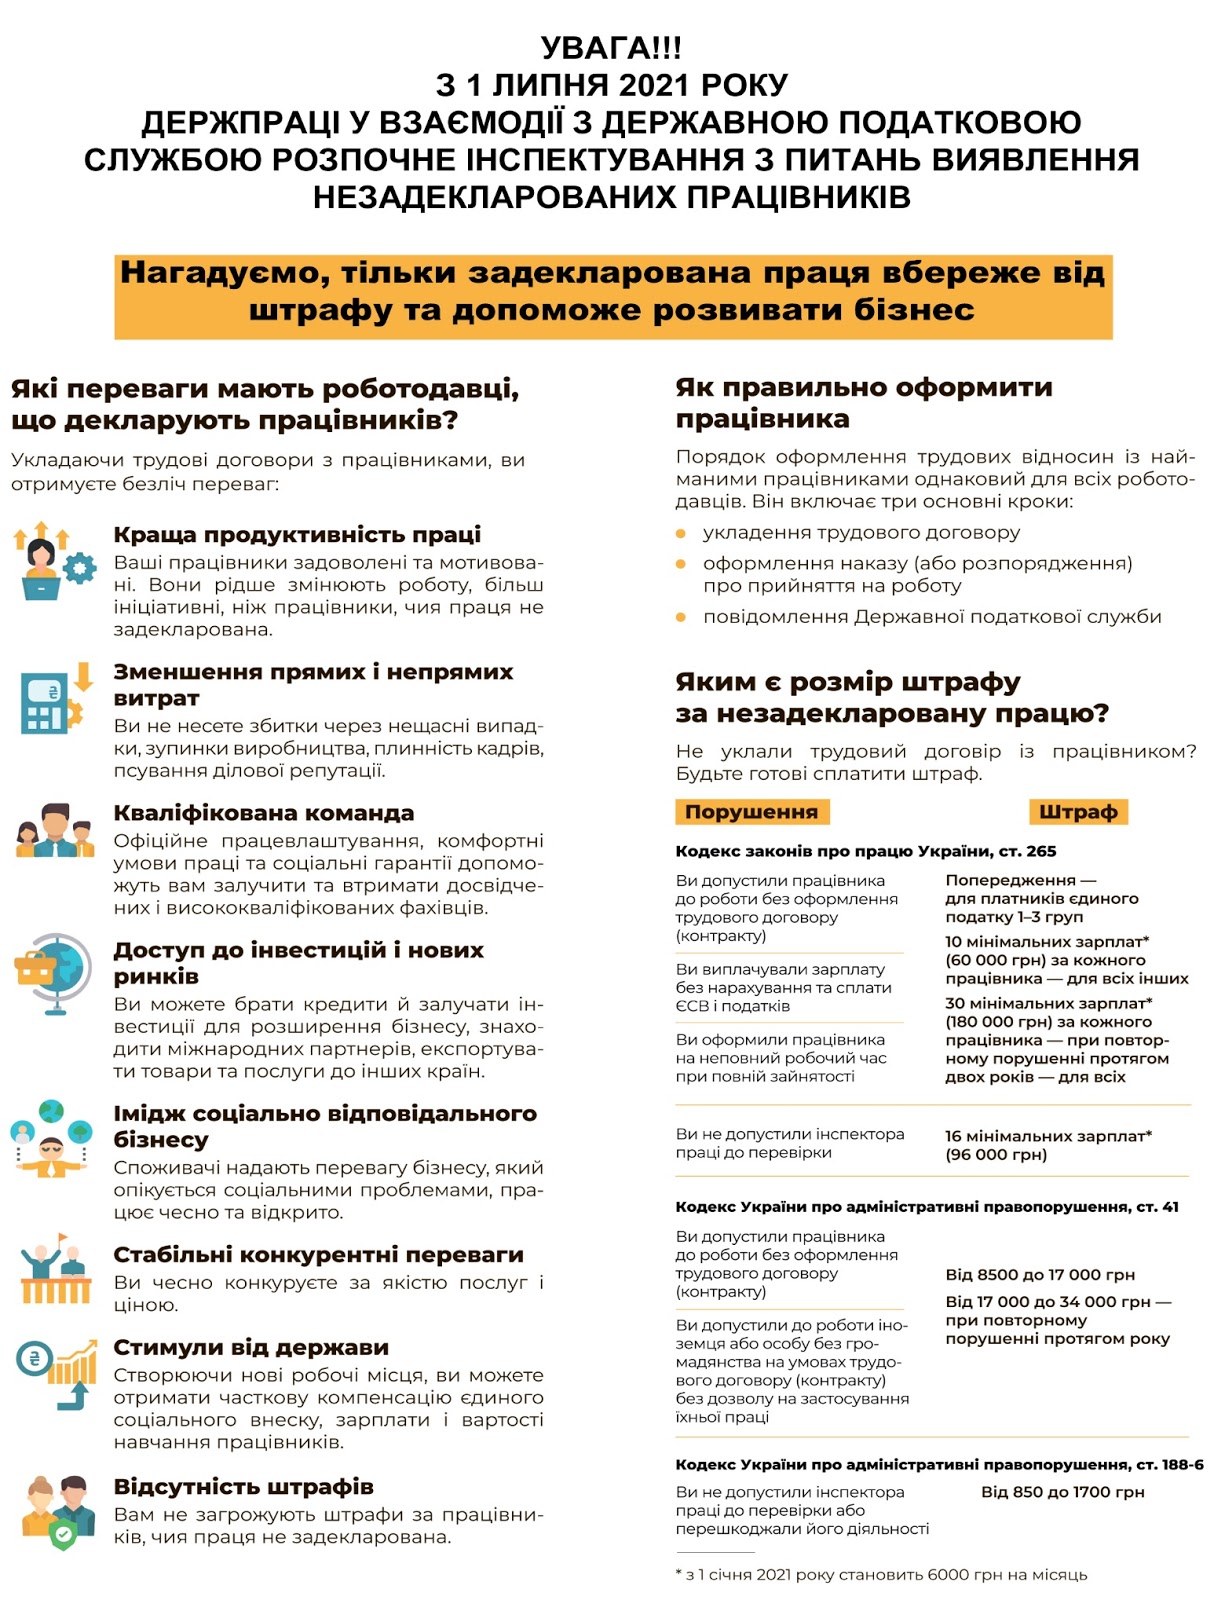 Скриншот: В Украине начнут инспекции для выявления работодателей, использующих незадекларированный труд